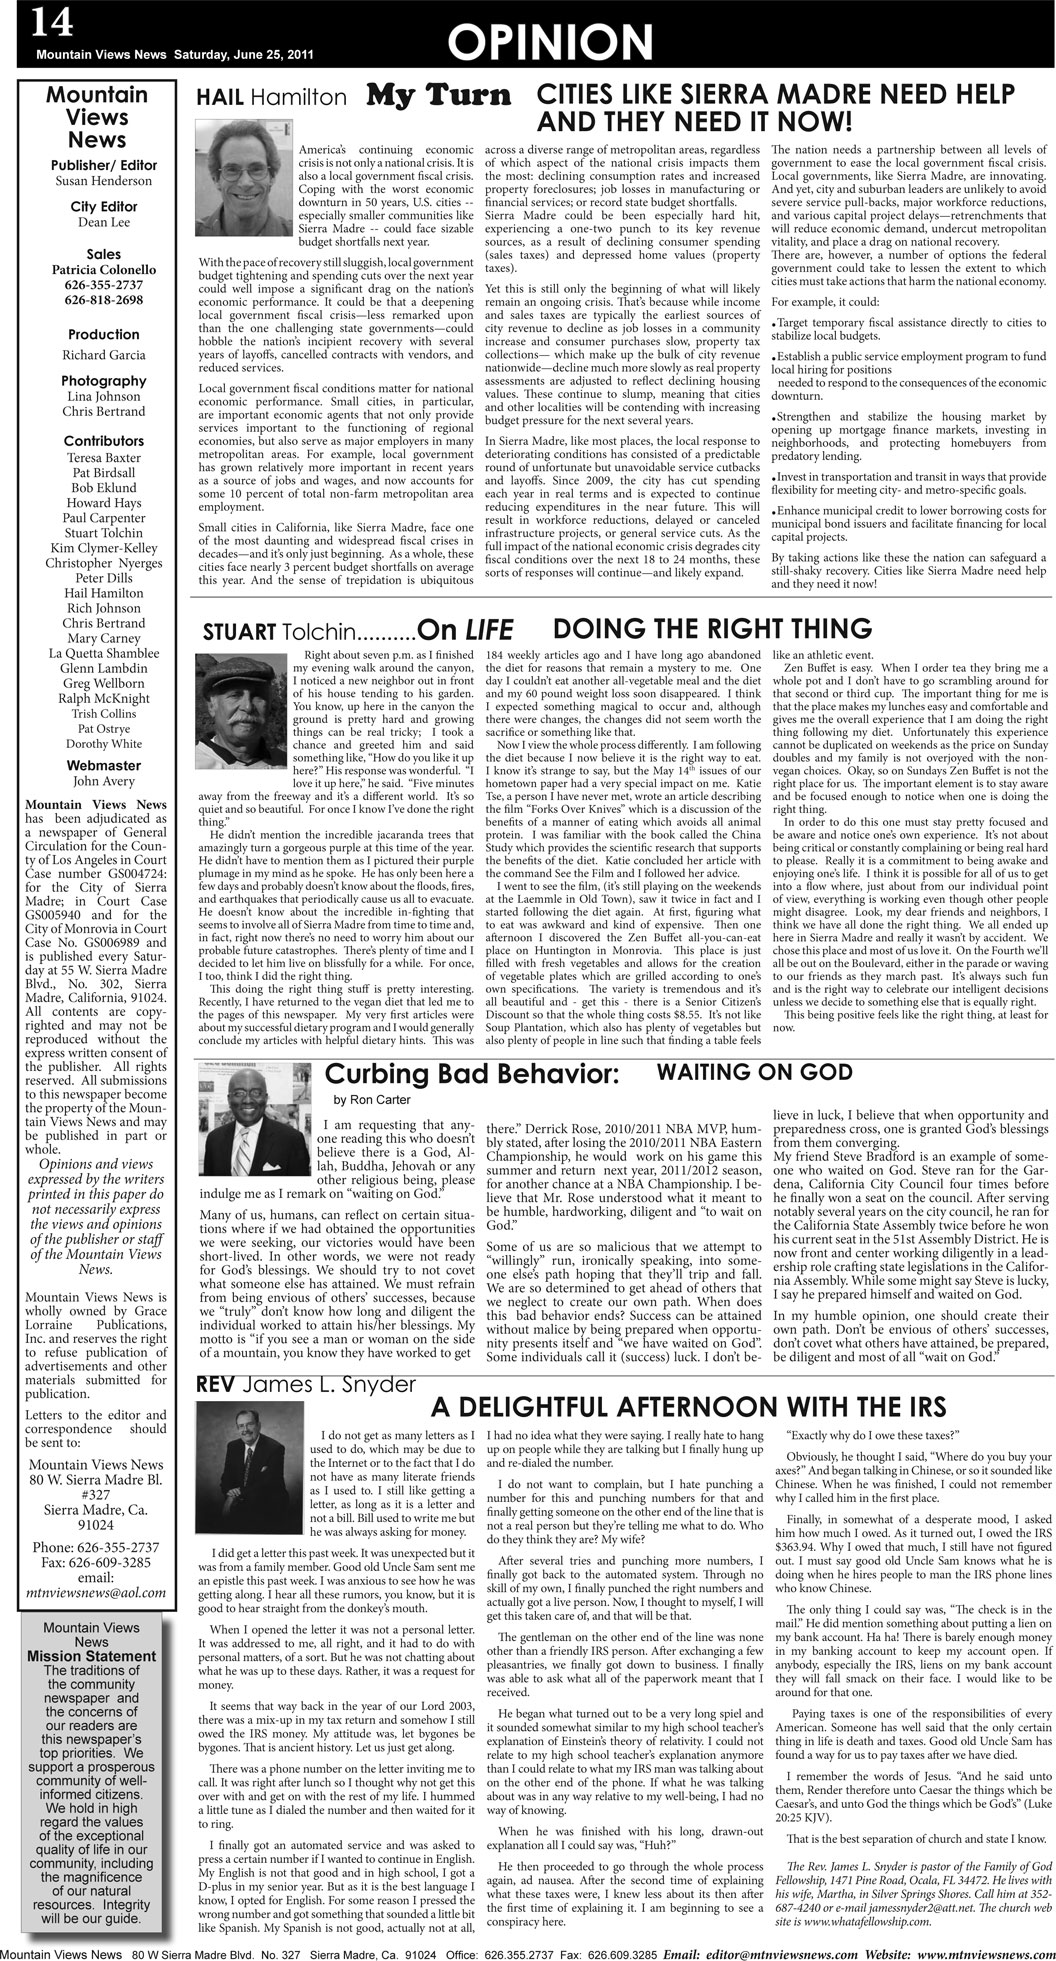 MVNews this week:  Page 14